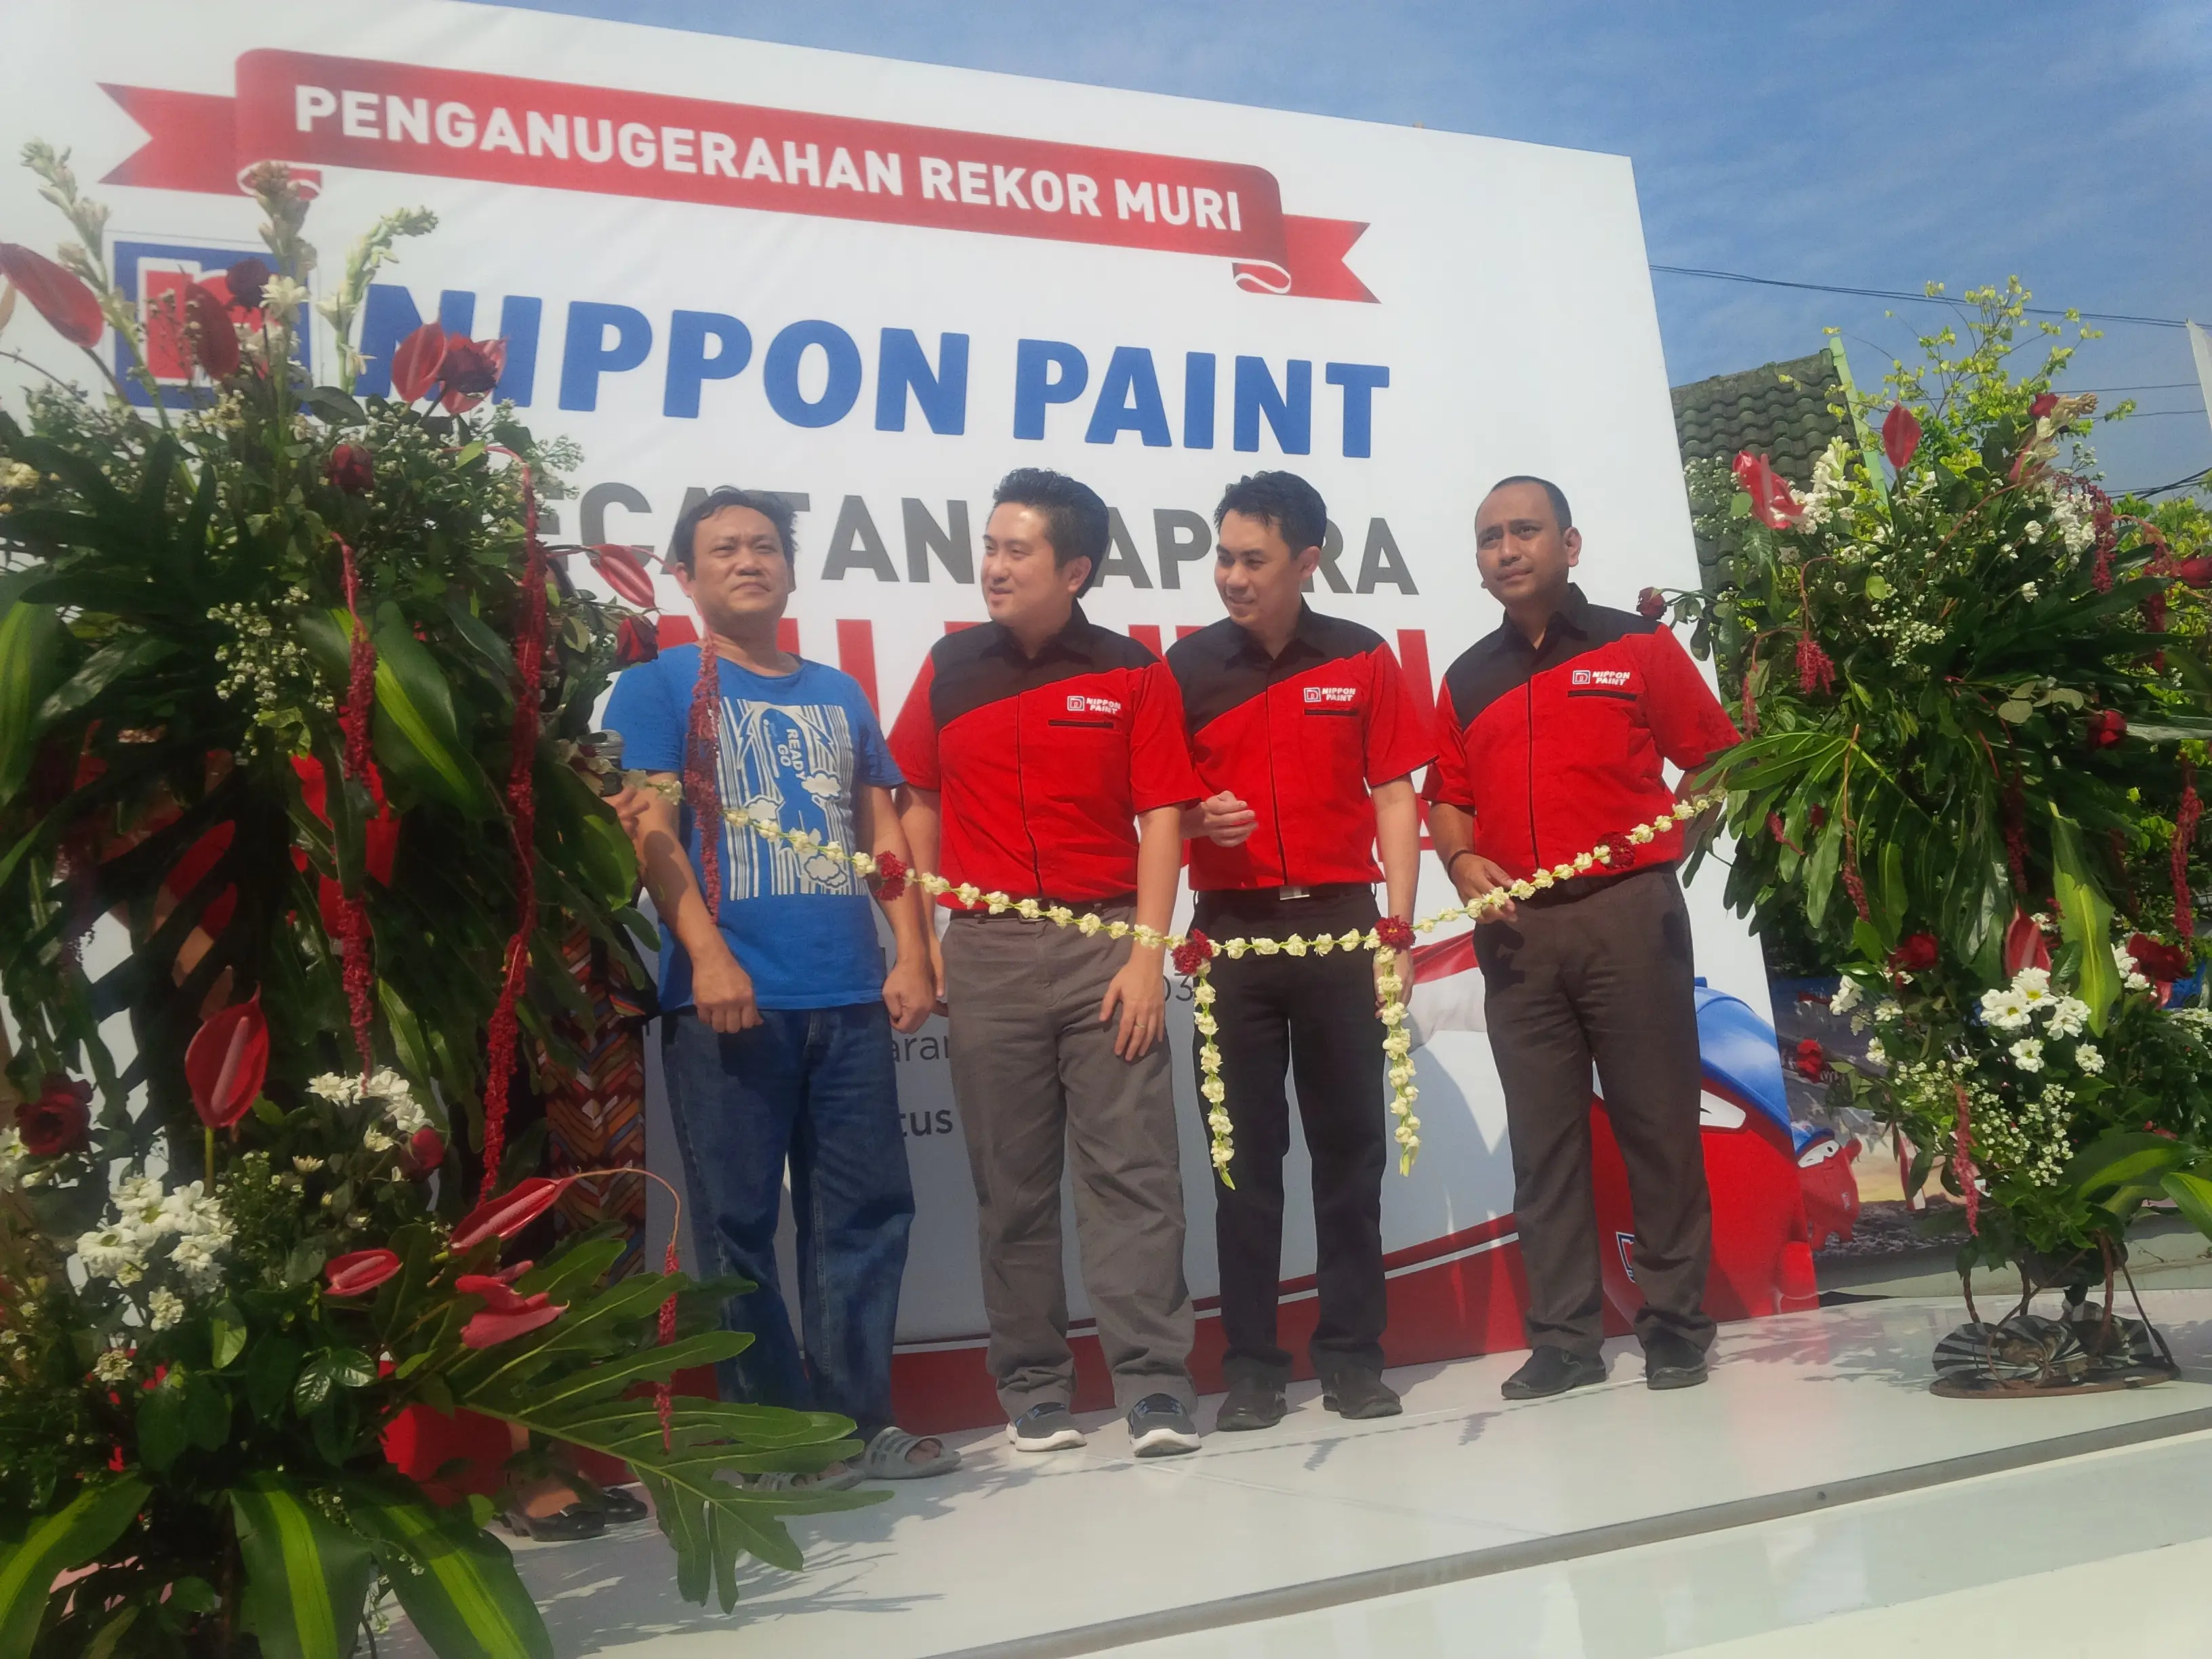 Berpose setelah sukses meraih penghargaan tertinggi di Indonesia dalam program Gapura Merah Putih. (foto : Liputan6.com/Felek Wahyu)